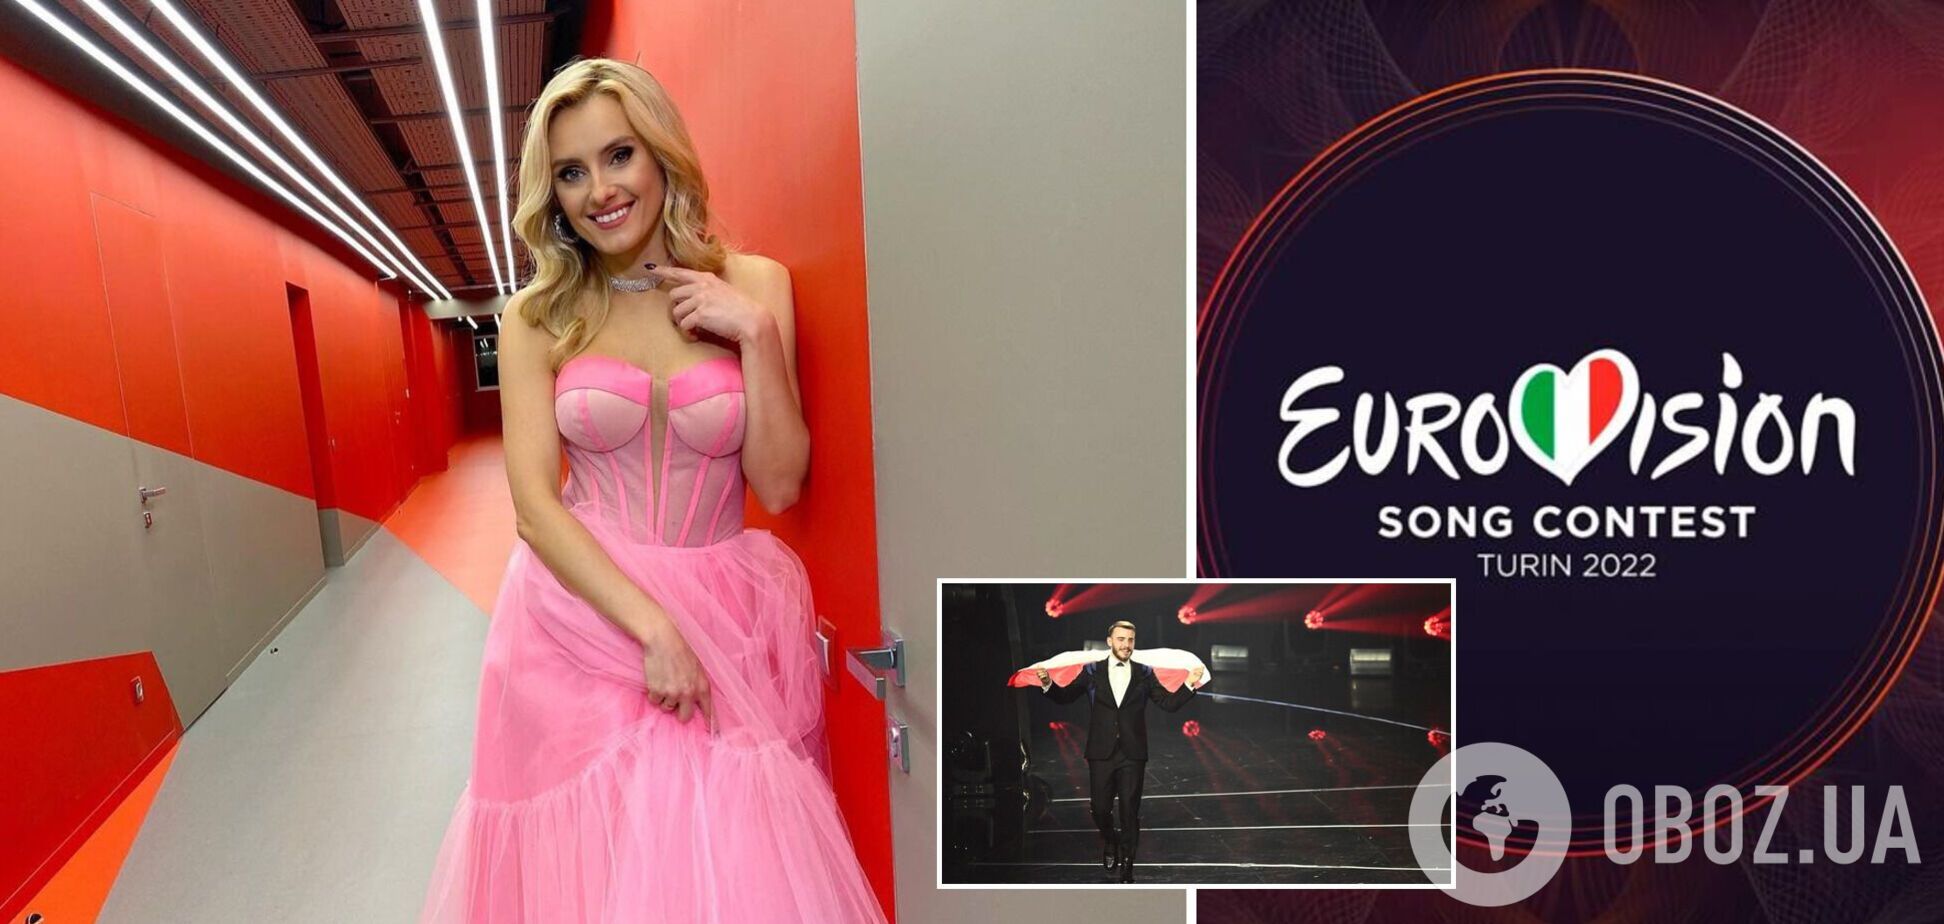 Ірина Федишин заявила про цькування на Євробаченні: вмикайте здоровий розум! Журі голосує професійно, глядачі — інакше